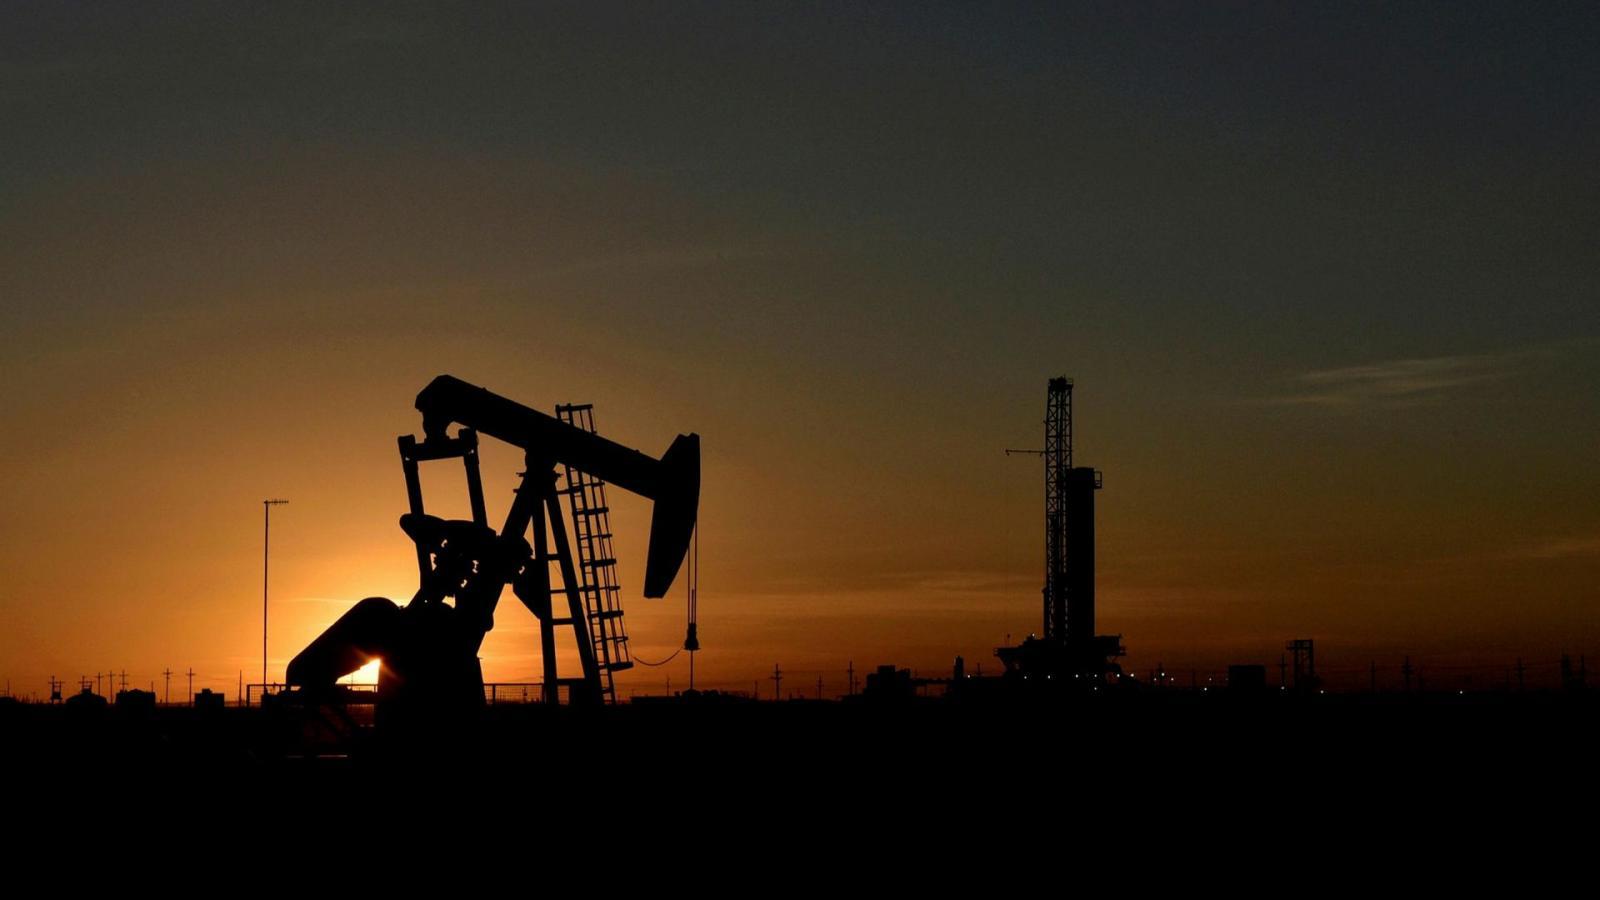 Οι μεγάλες εταιρείες πετρελαίου στρέφονται στο «λευκό χρυσό» -Οι επενδύσεις που αλλάζουν τα δεδομένα